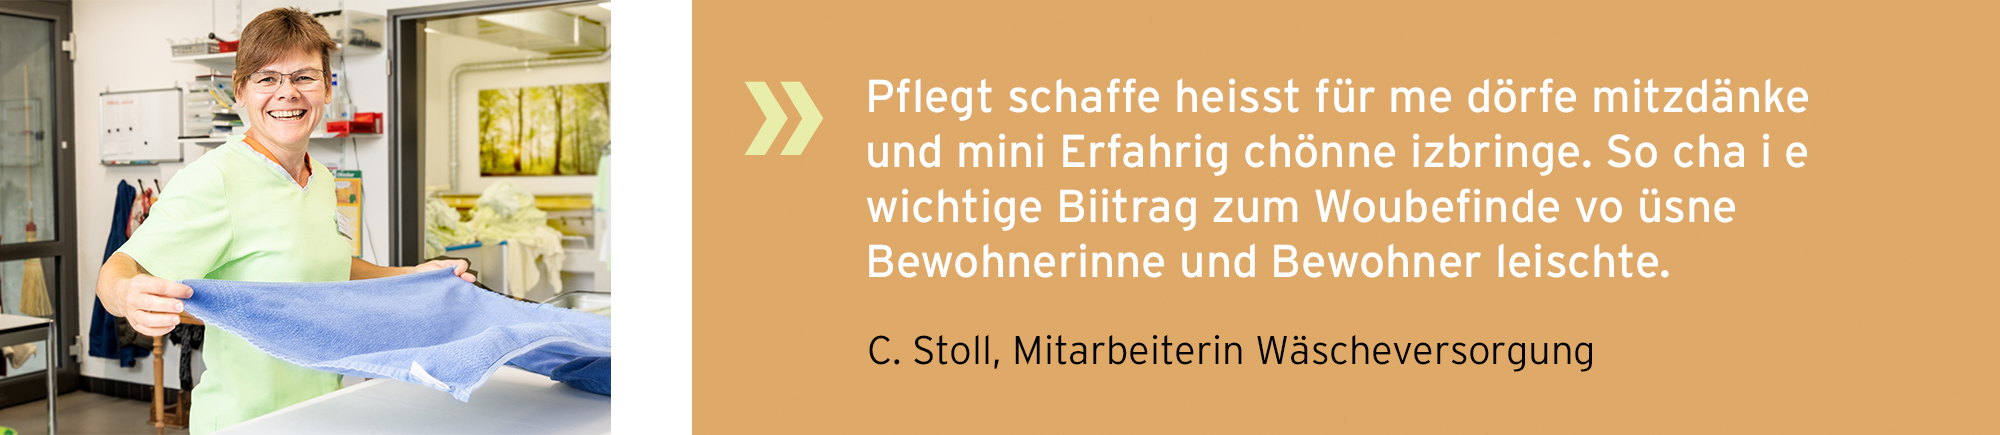 alterssitz_buechibaerg_slider_statements_Betreutes_Wohnen_Stoll_neu